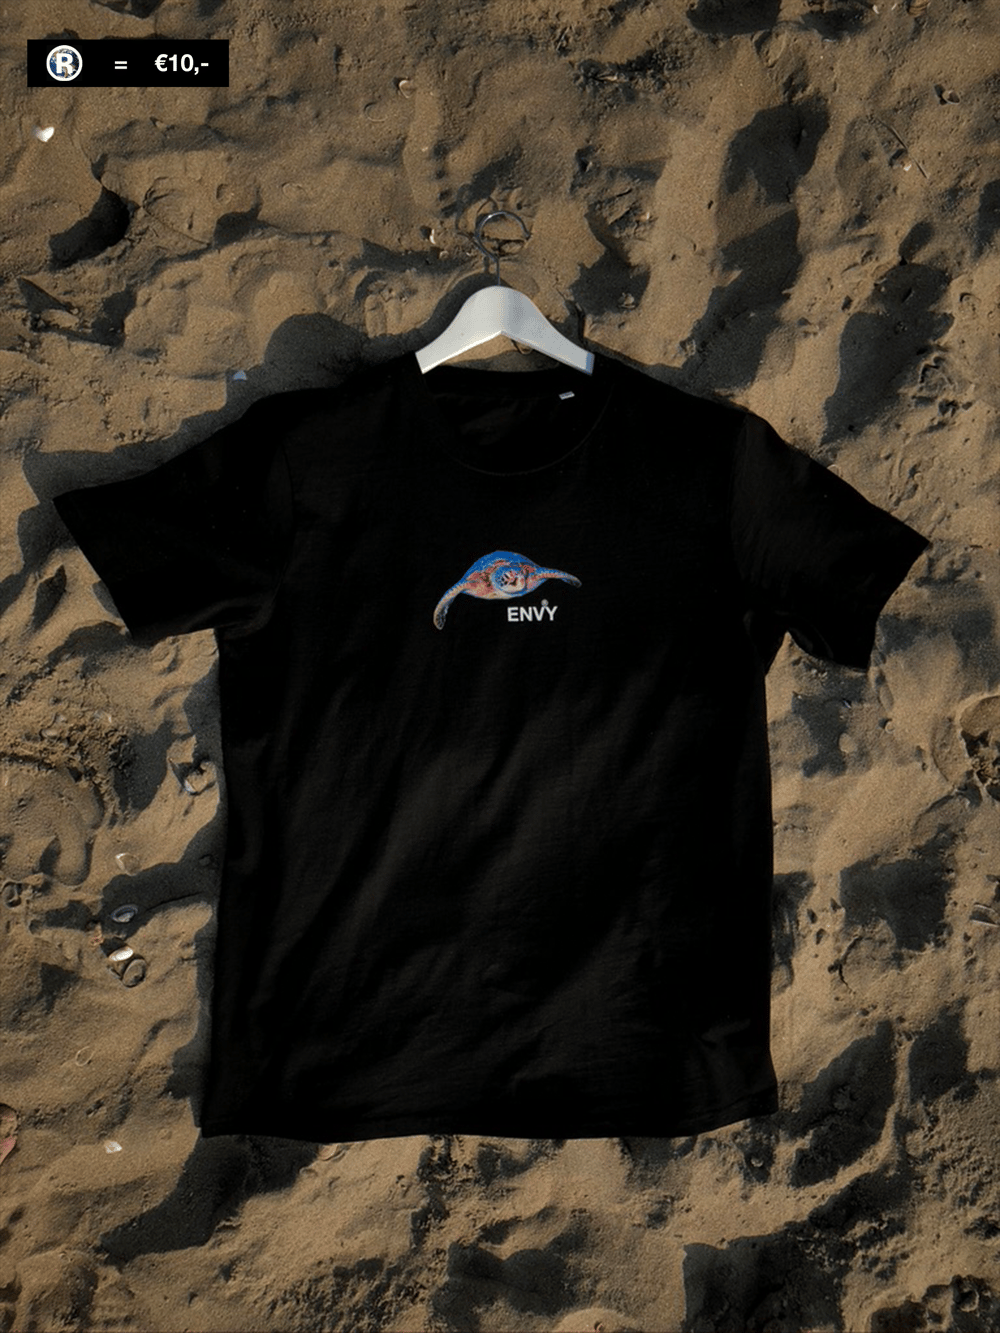 2020 Tour de Turtles T-Shirt – Sea Turtle Conservancy